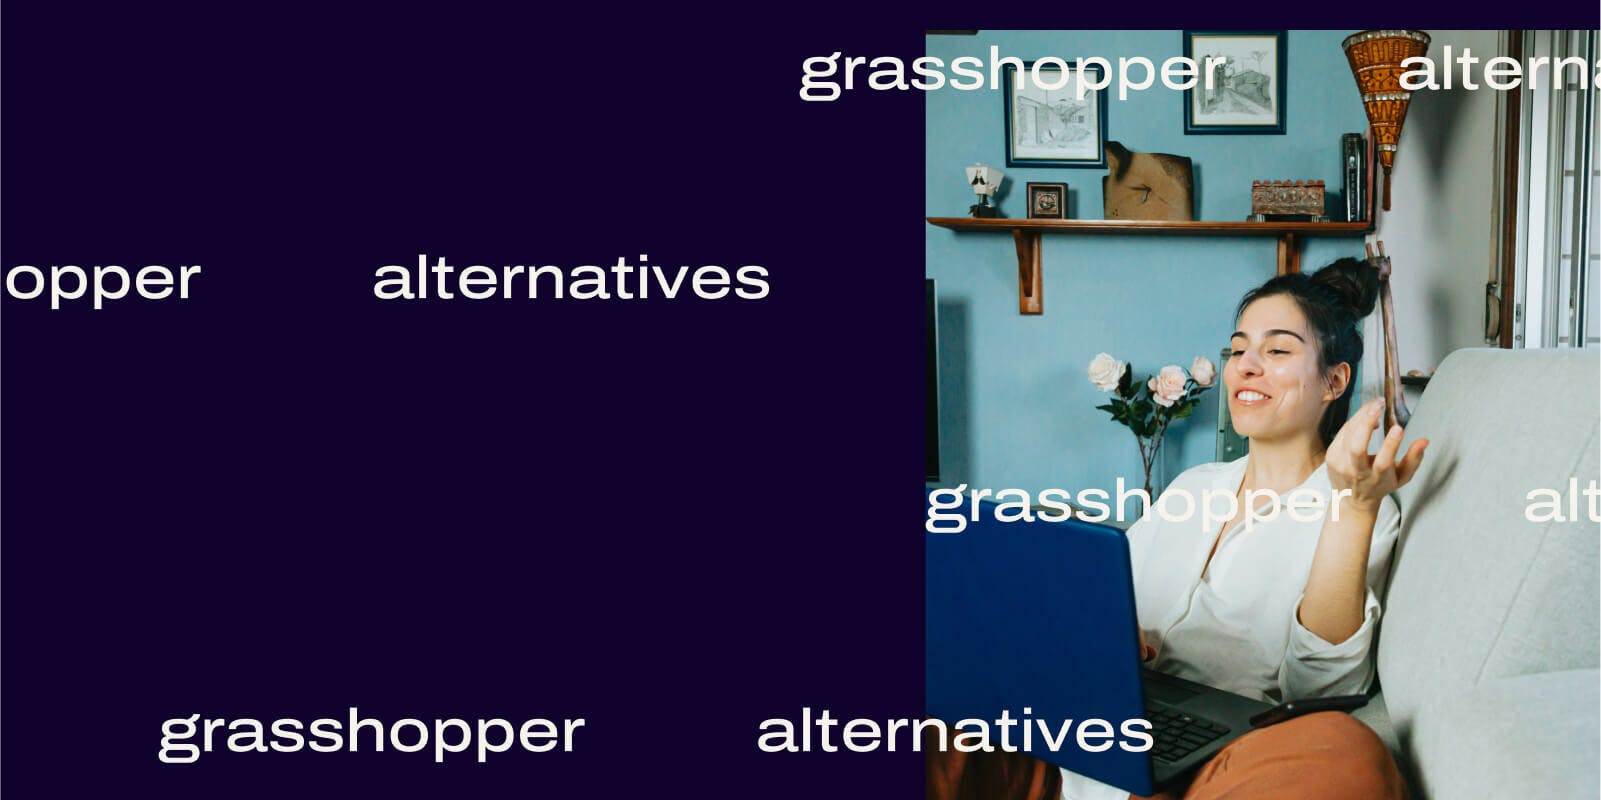 Grasshopper alternatives header